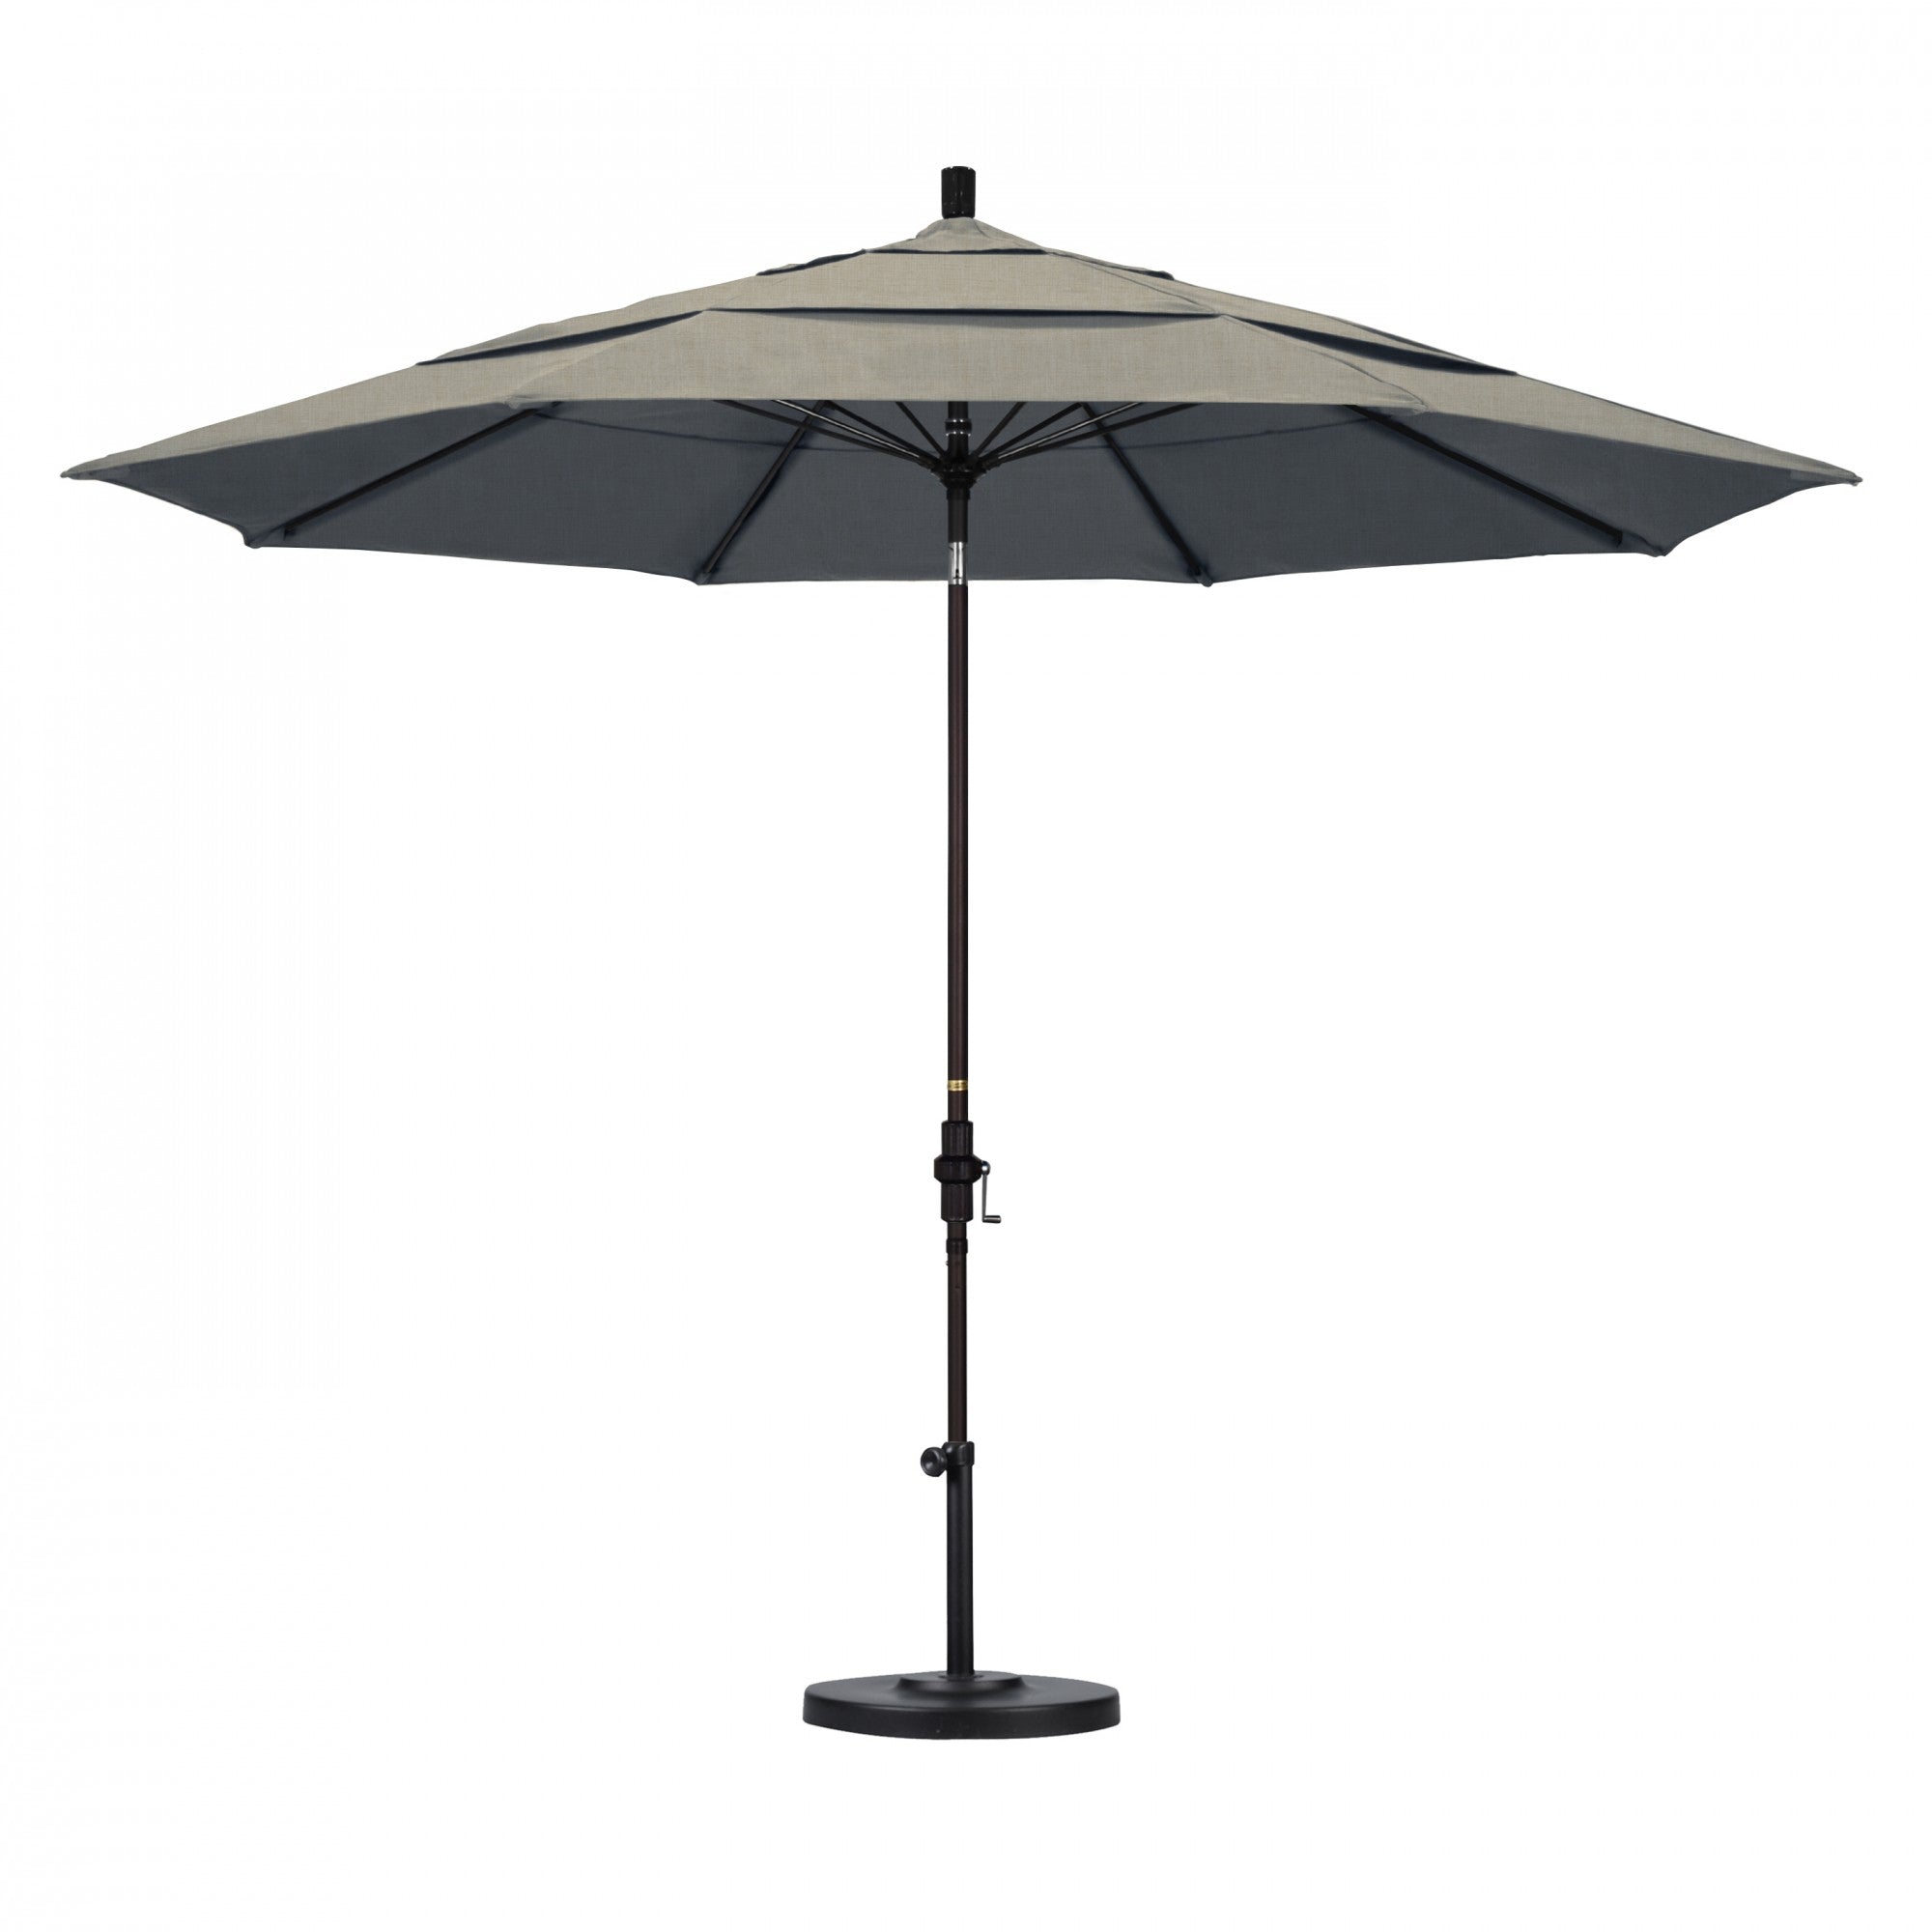 California Umbrella - 11' - Patio Umbrella Umbrella - Aluminum Pole - Spectrum Dove - Sunbrella  - GSCUF118117-48032-DWV